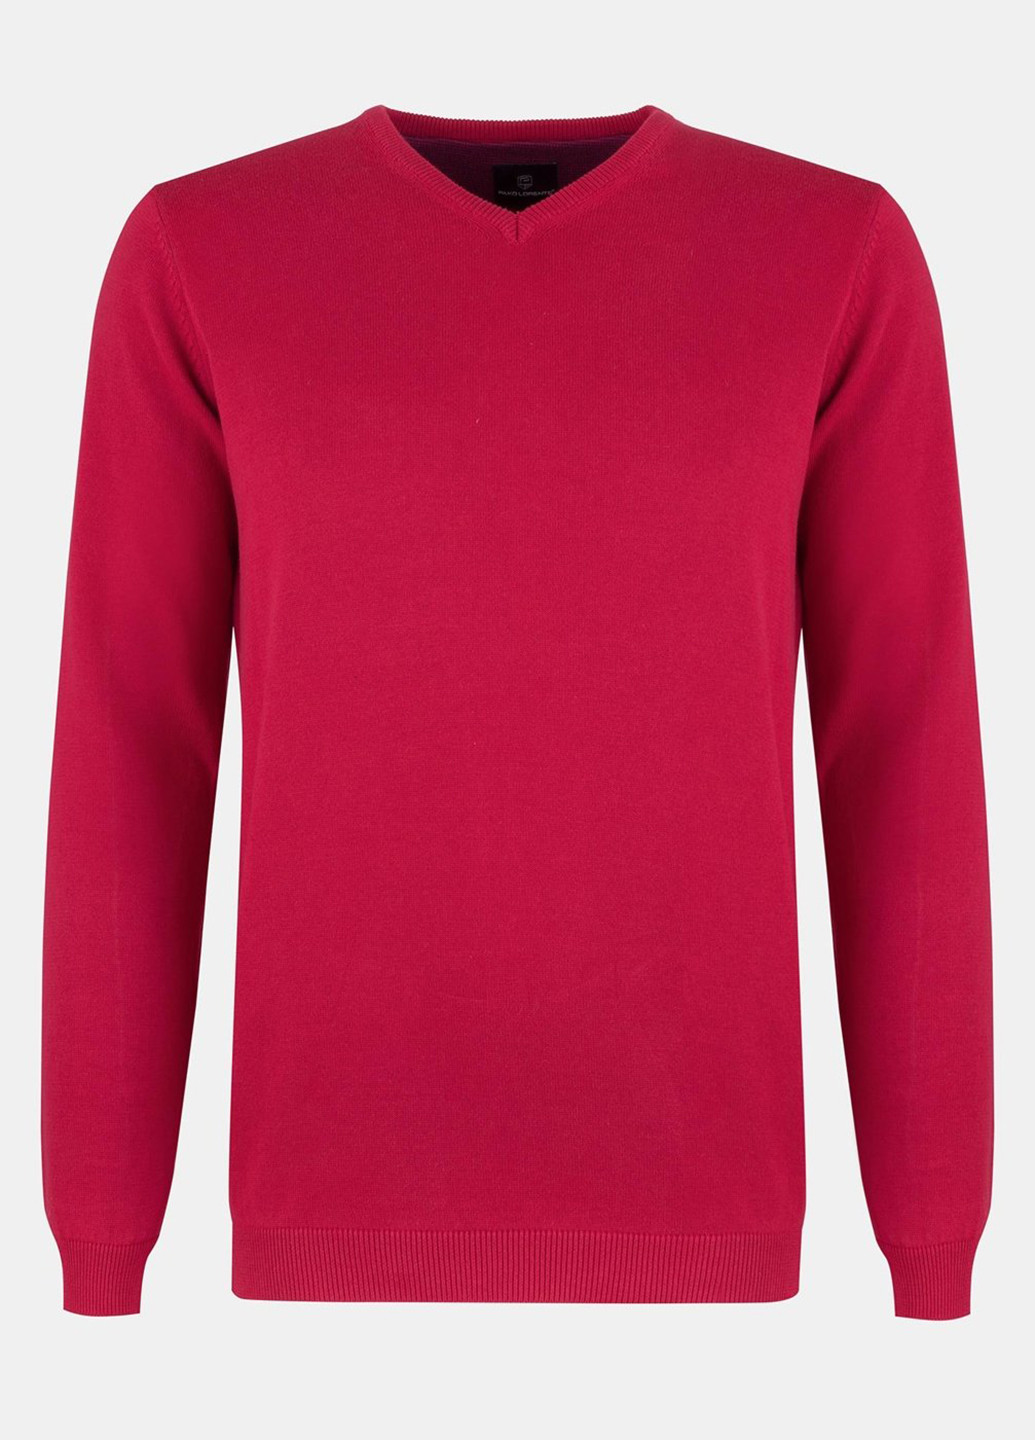 Червоний демісезонний пуловер пуловер Pako Lorente